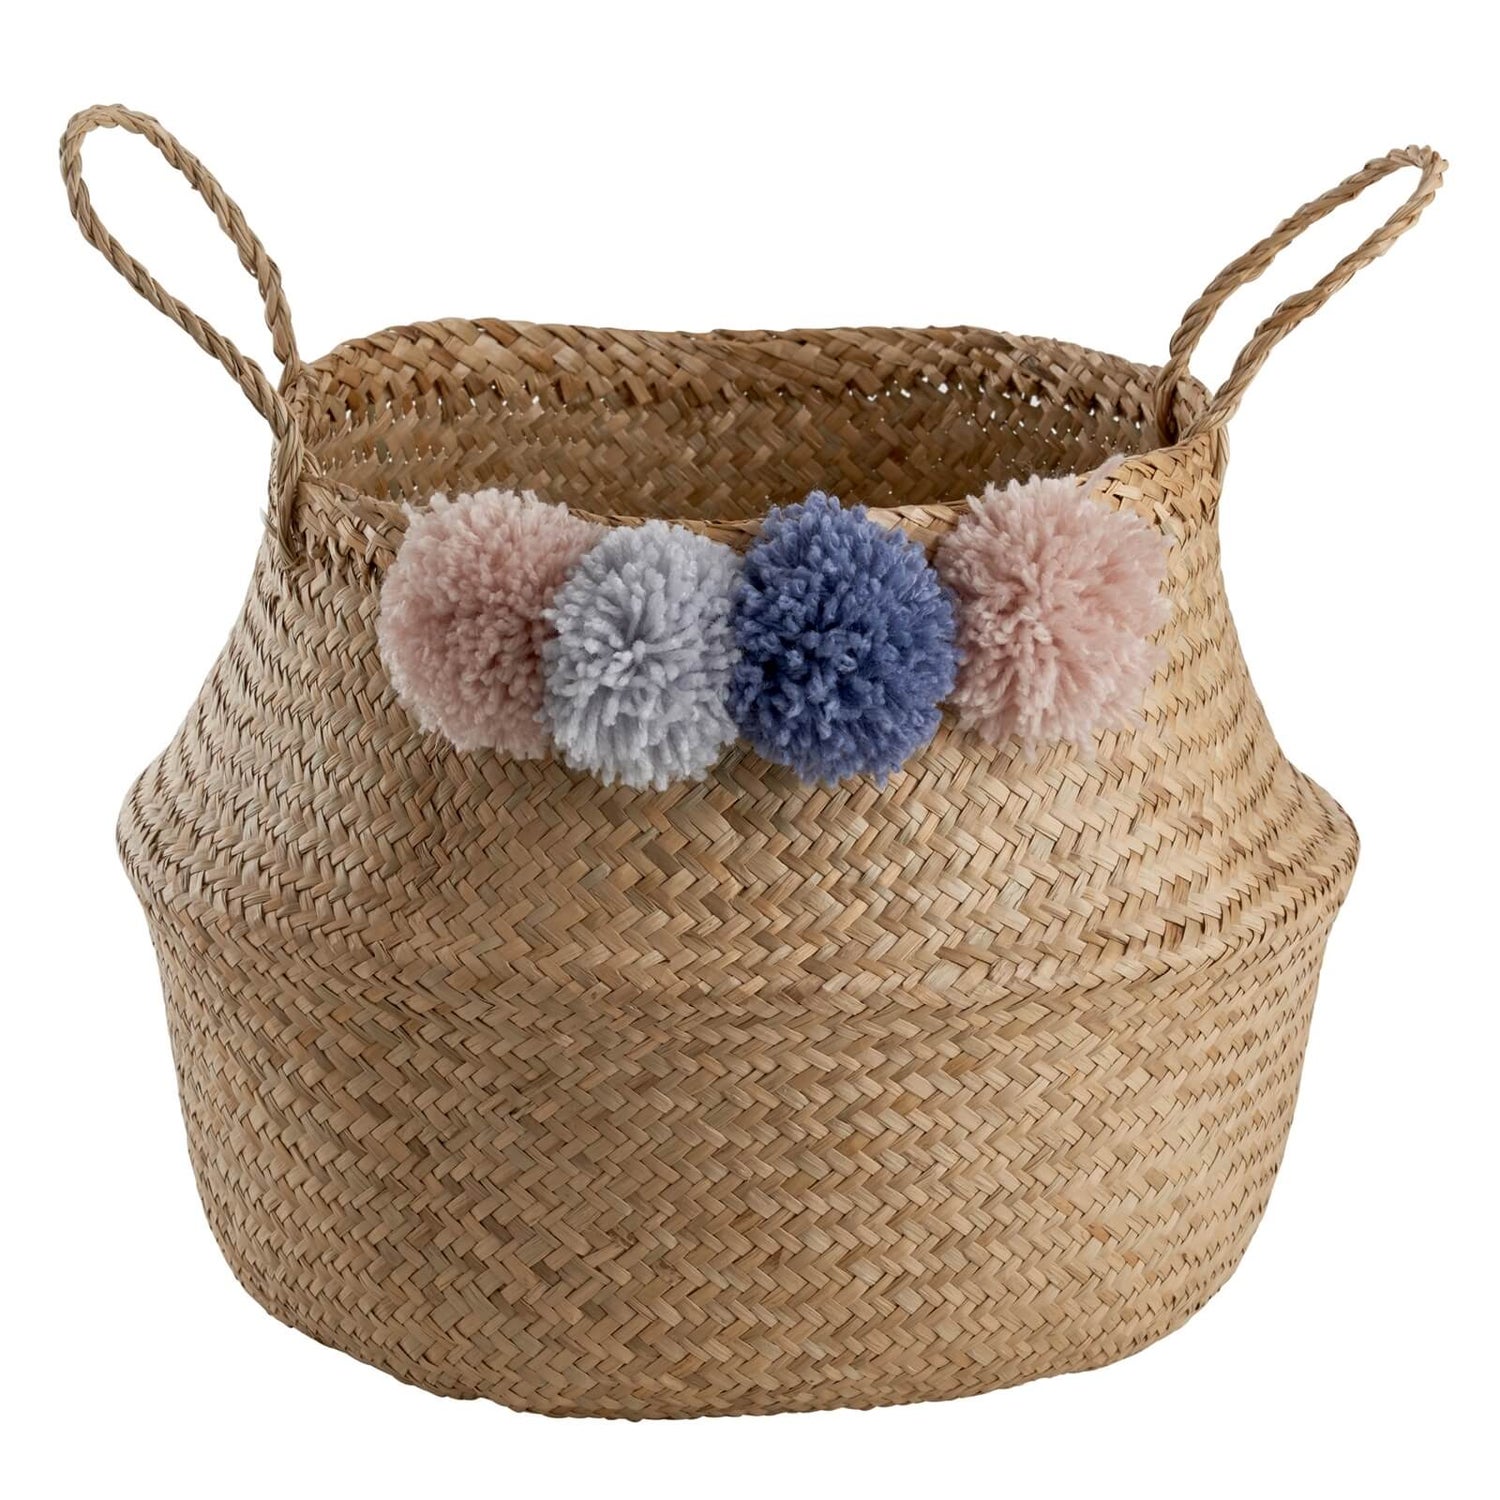 eksplicit træthed Indgang Storage Basket - Natural with Pom Pom | Homebase